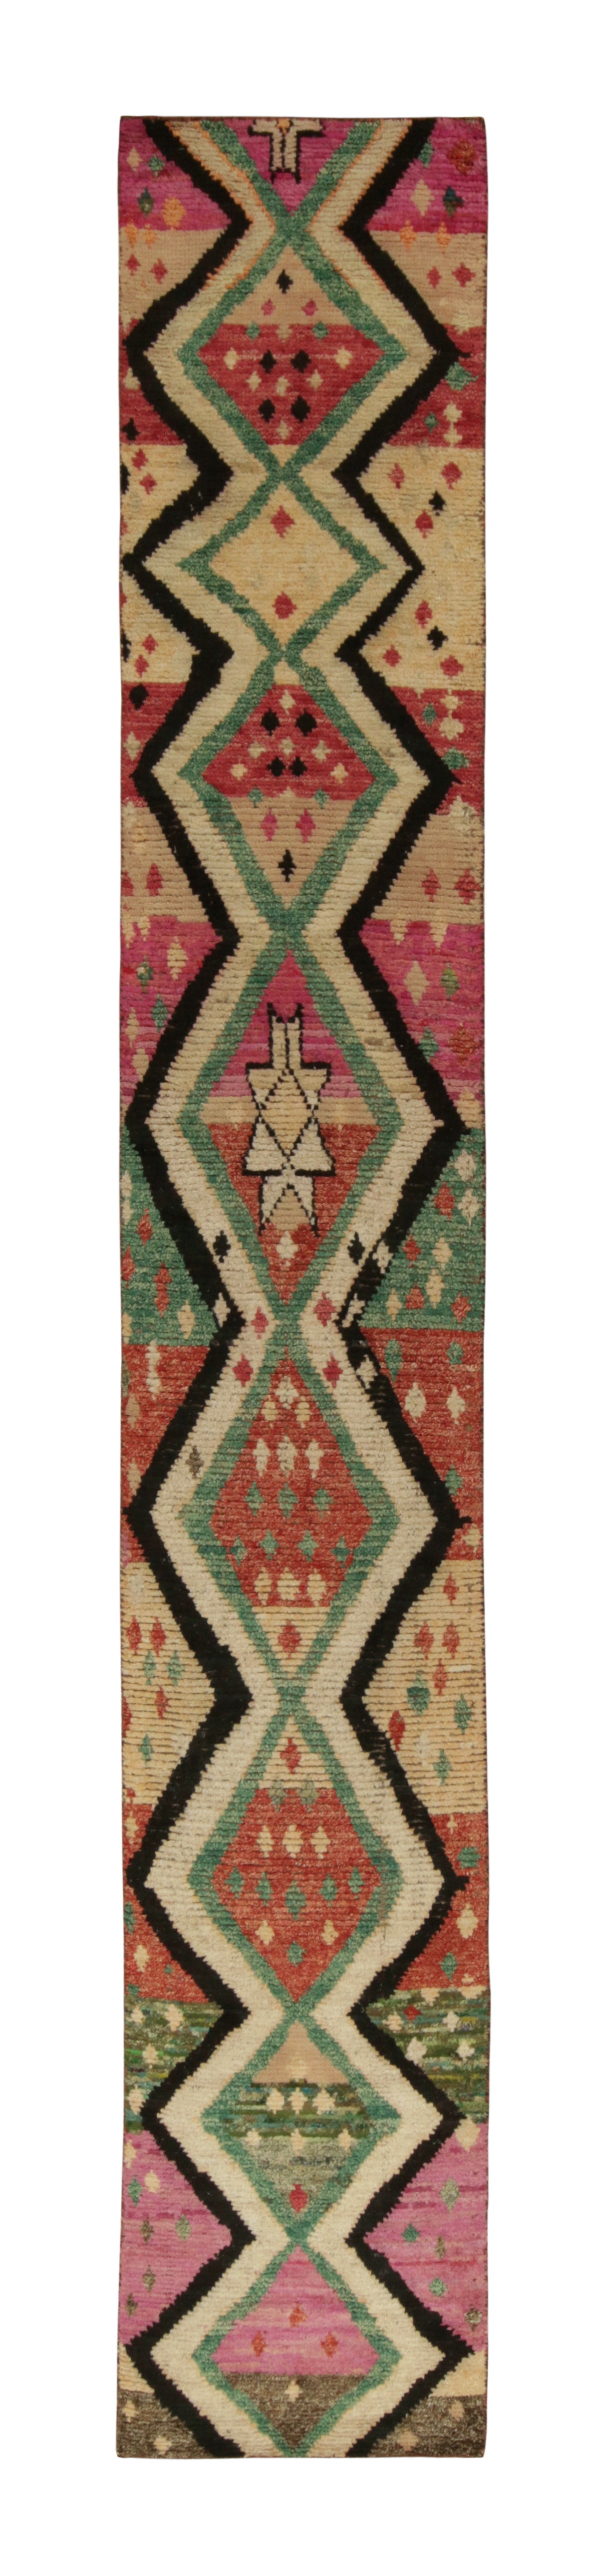 Tapis & Kilim - Tapis de course de style marocain à motif géométrique tribal multicolore